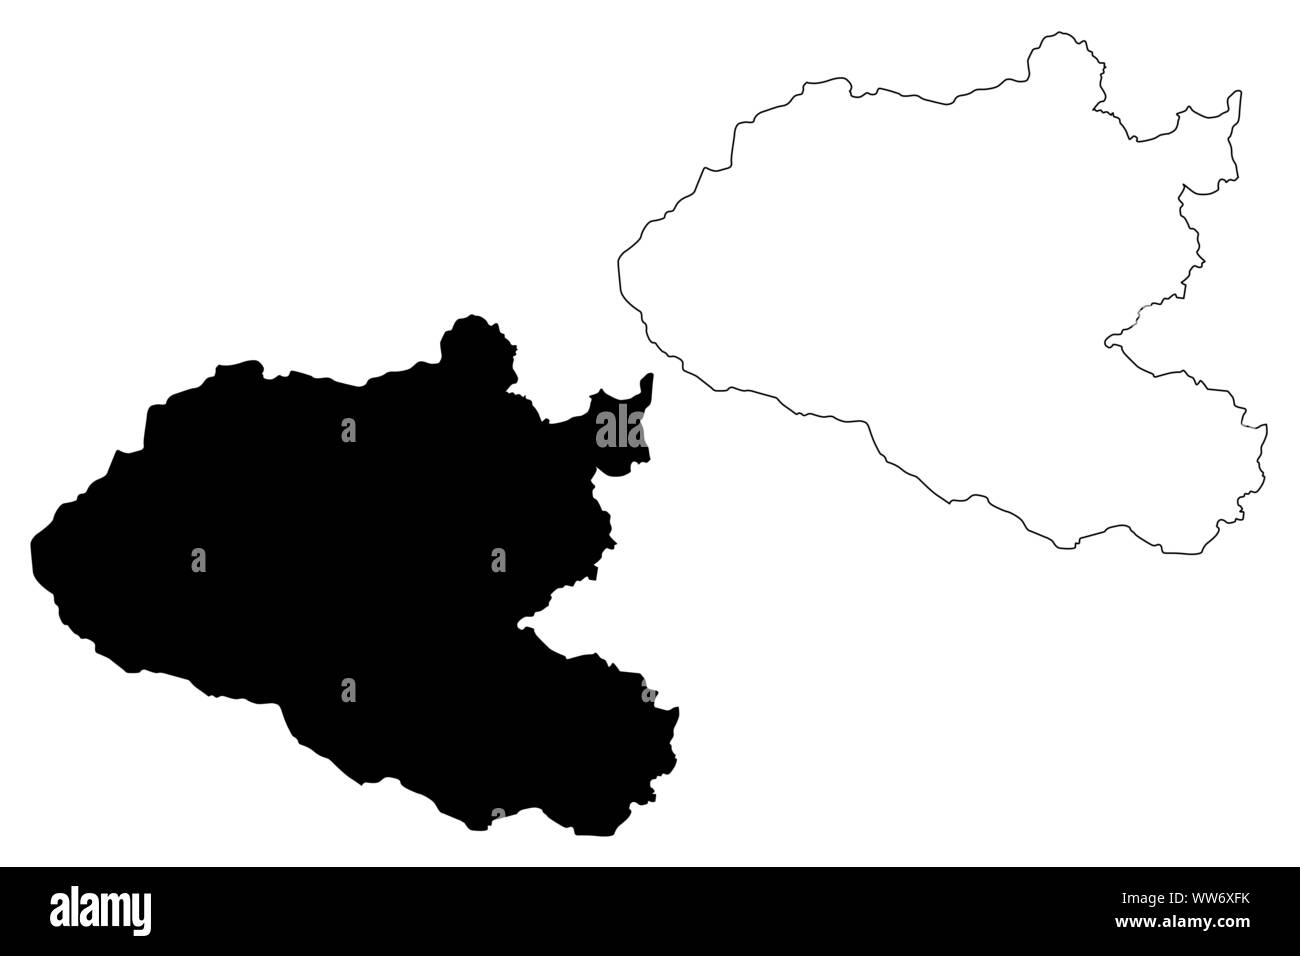 Xiangkhouang Province (République démocratique populaire du Laos, Muang Lao, Provinces du Laos) map vector illustration croquis Xiangkhouang, scribble map Illustration de Vecteur